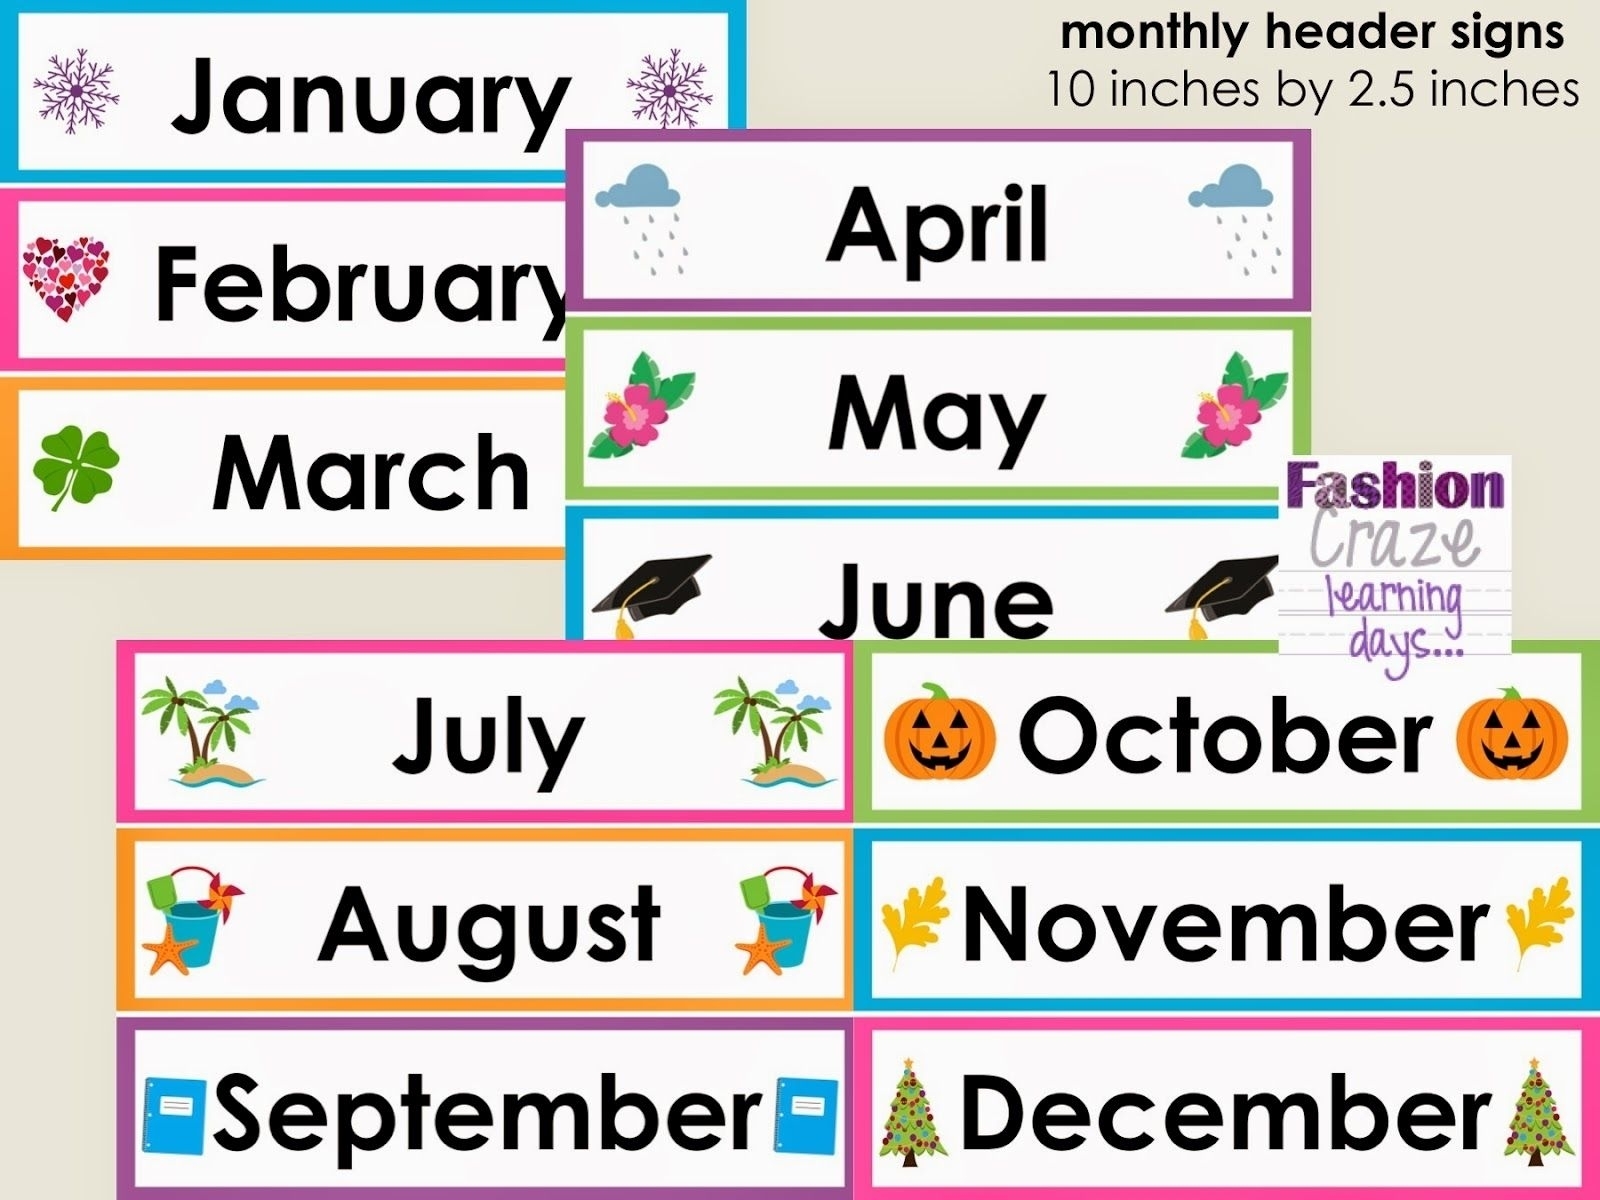 Most months of the year. Months of the year. Months names. Months in English. All months of the year.